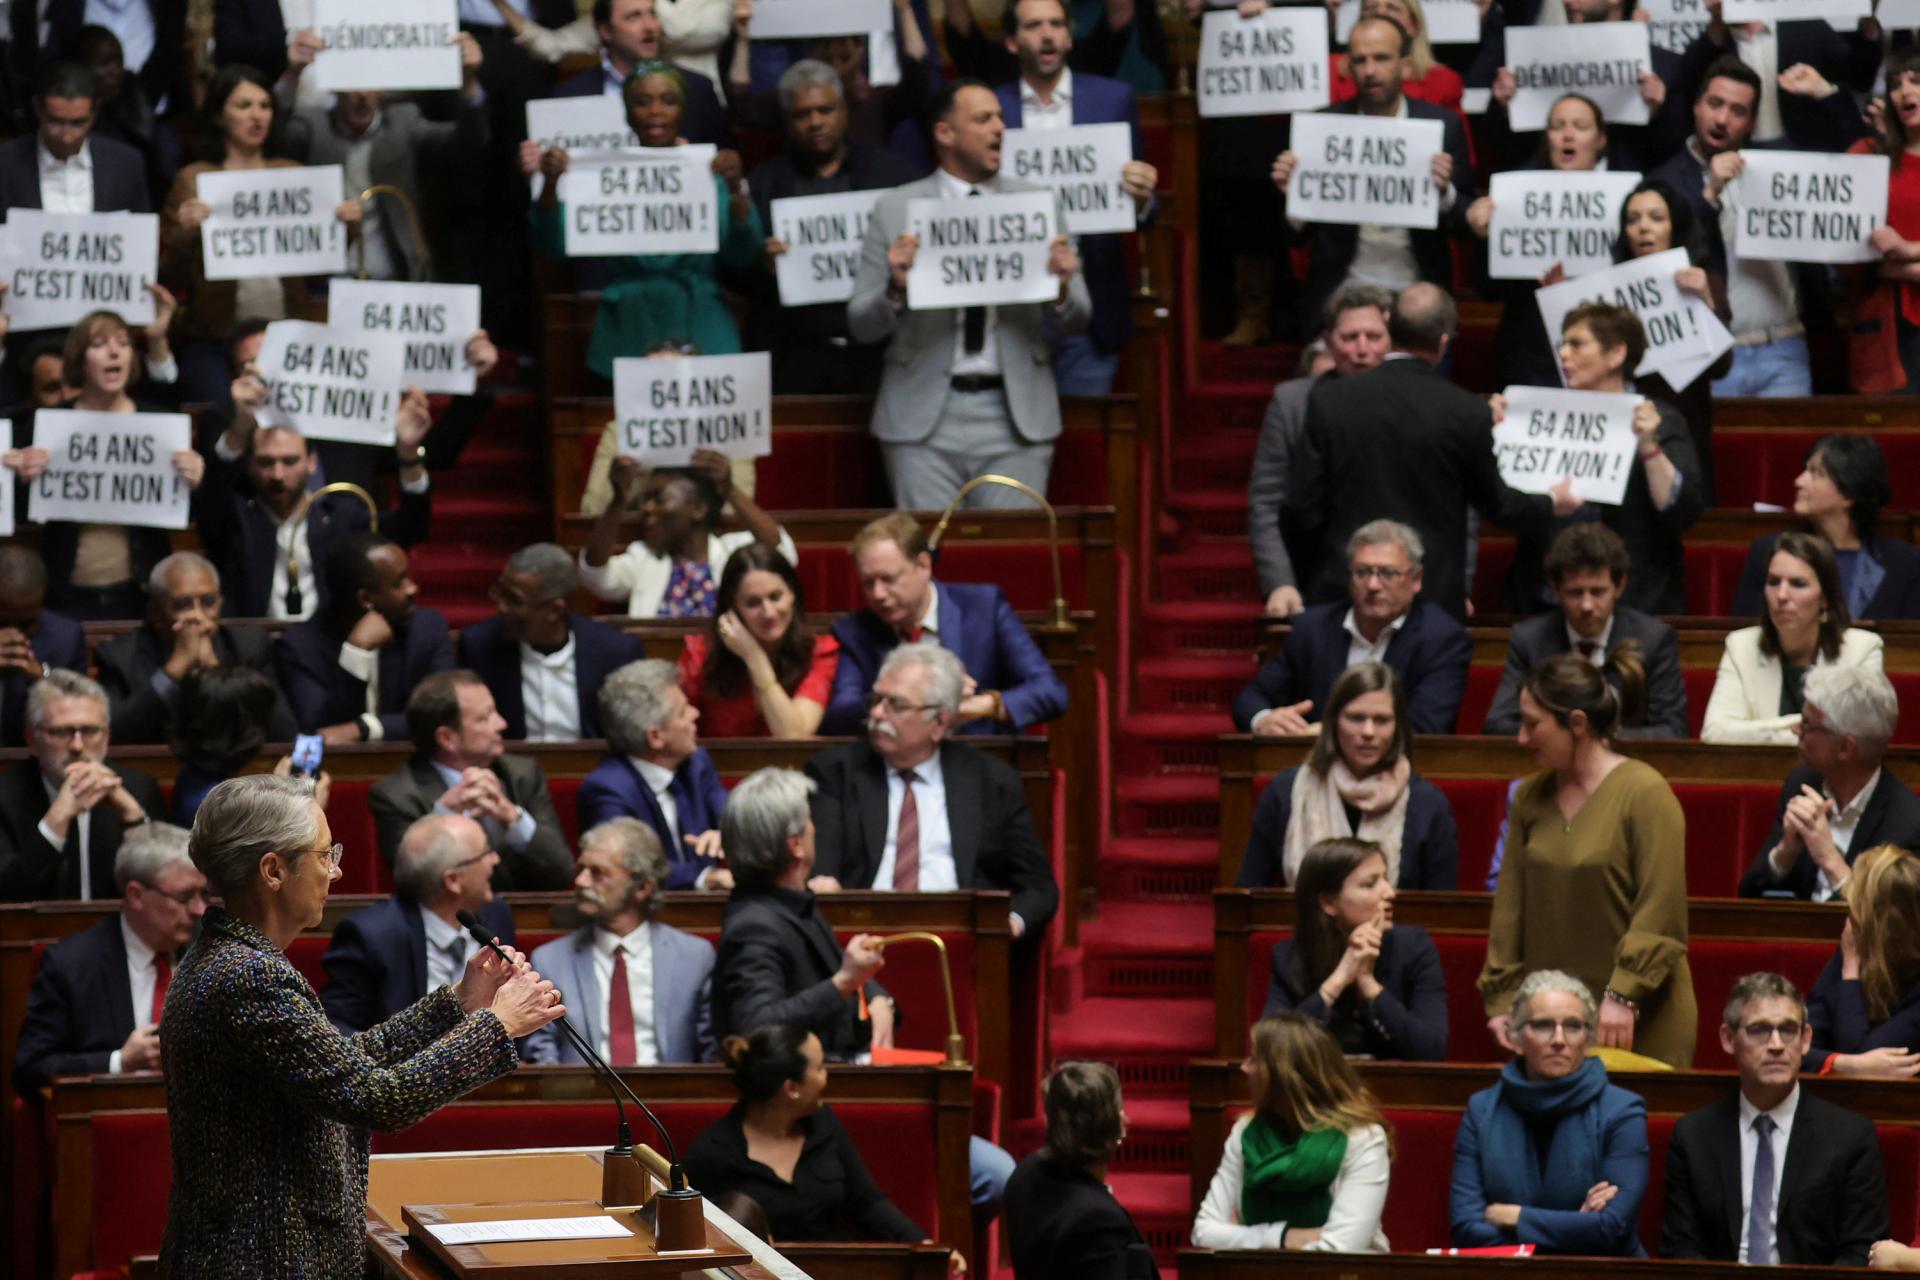 Le gouvernement français approuvera une réforme des retraites impopulaire sans vote du parlement.  Macron n’a pas la majorité